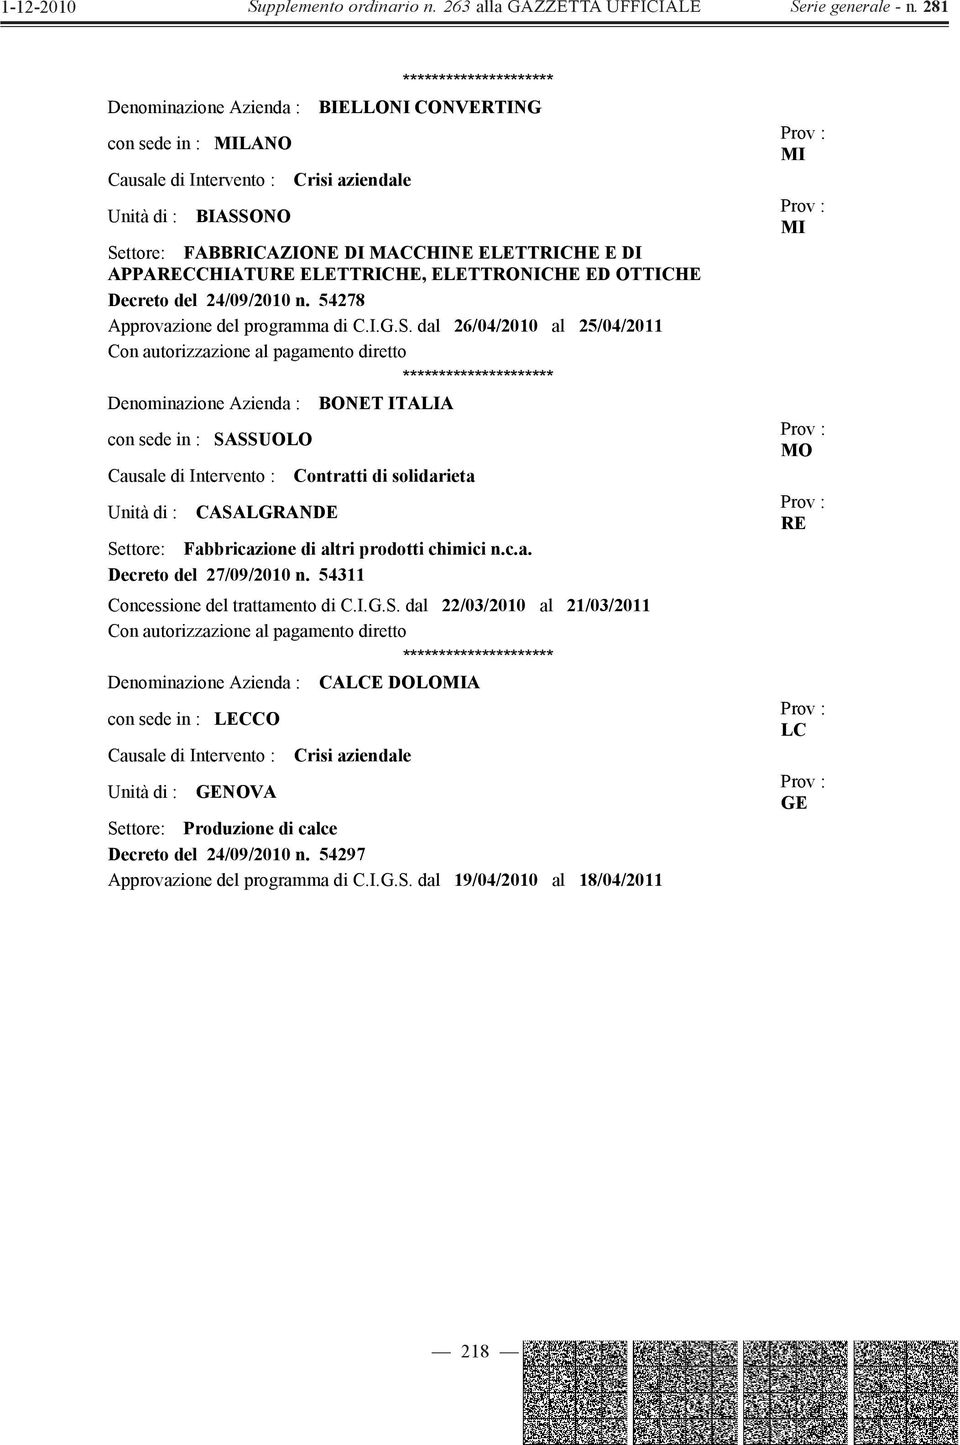 dal 26/04/2010 al 25/04/2011 Denominazione Azienda : BONET ITALIA con sede in : SASSUOLO Unità di : CASALGRANDE Contratti di solidarieta Settore: Fabbricazione di altri prodotti chimici n.c.a. Decreto del 27/09/2010 n.